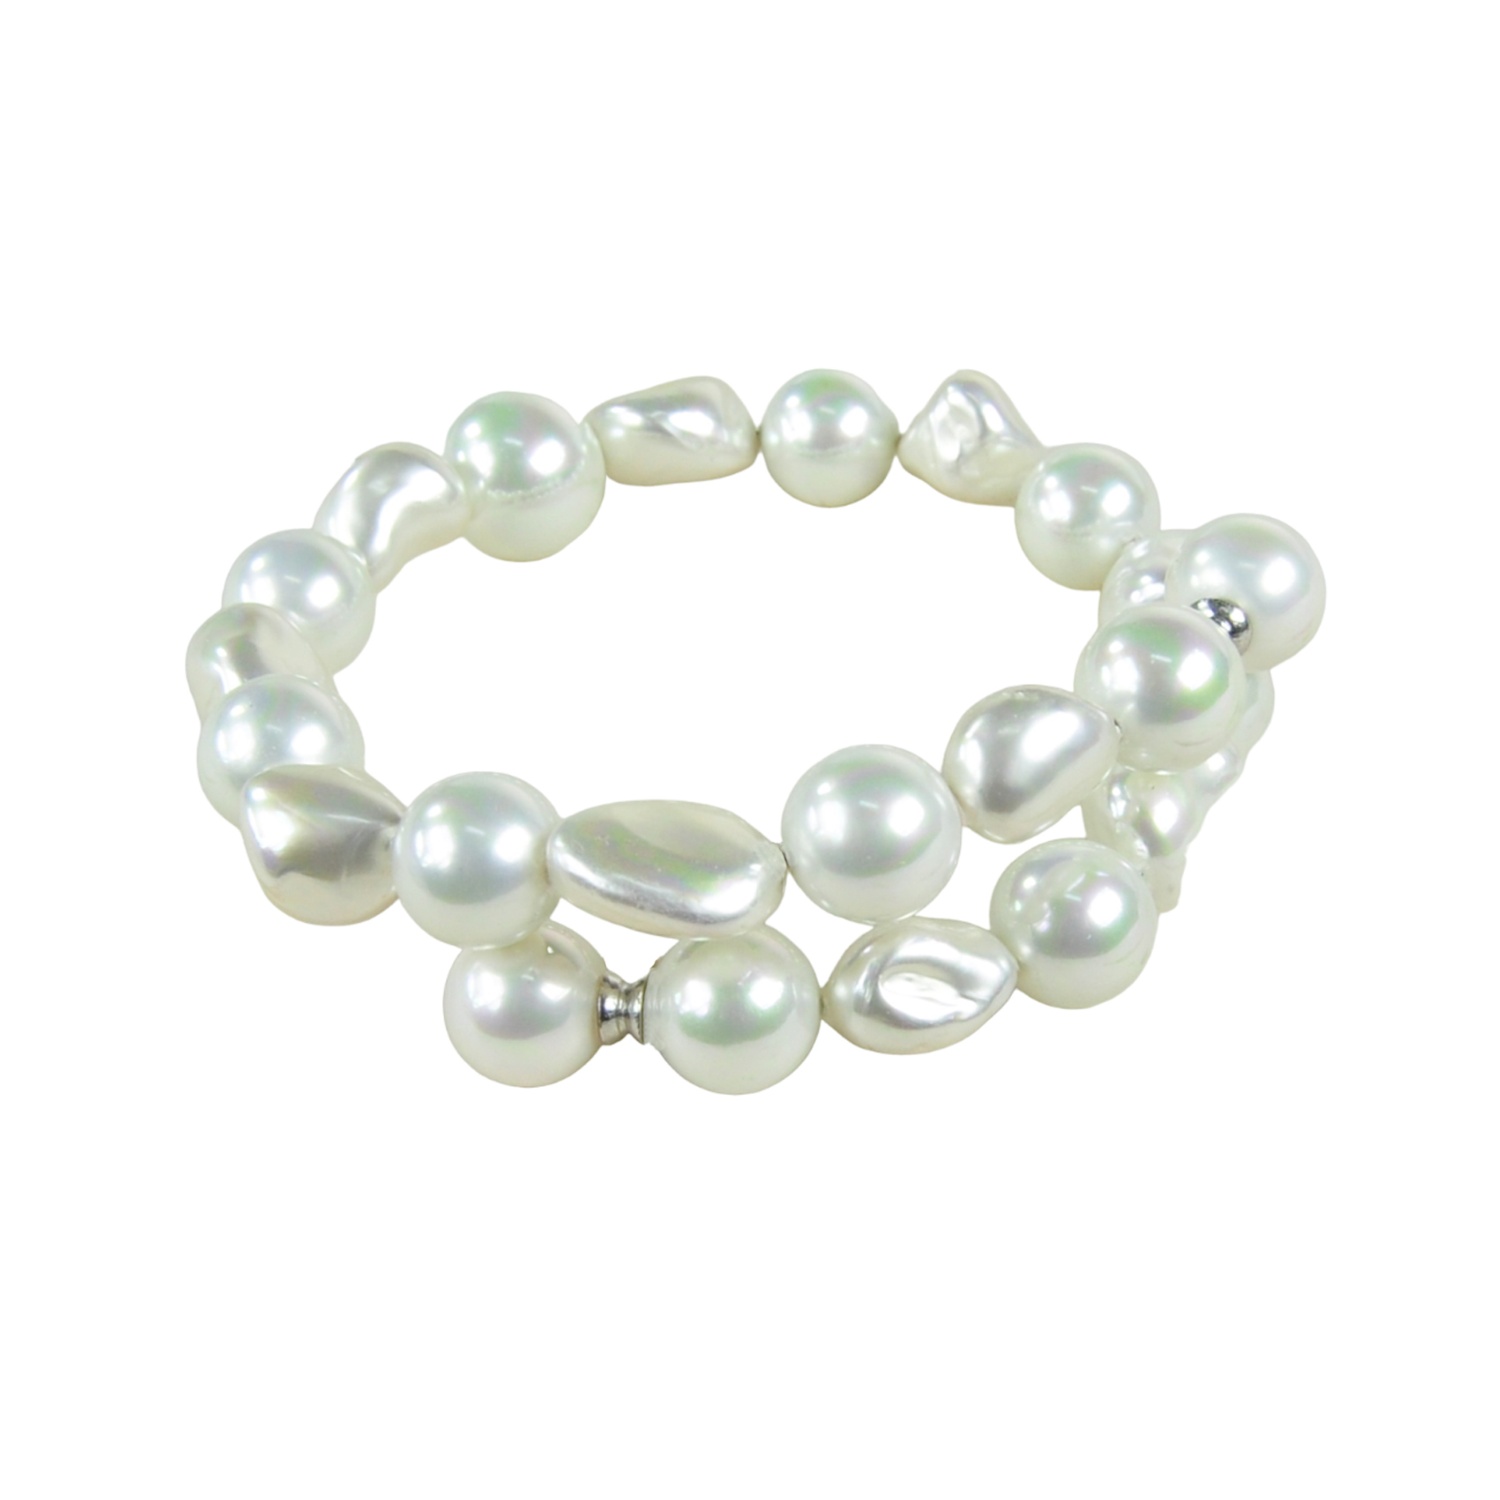 Brazalete de perlas adaptable a cualquier medida